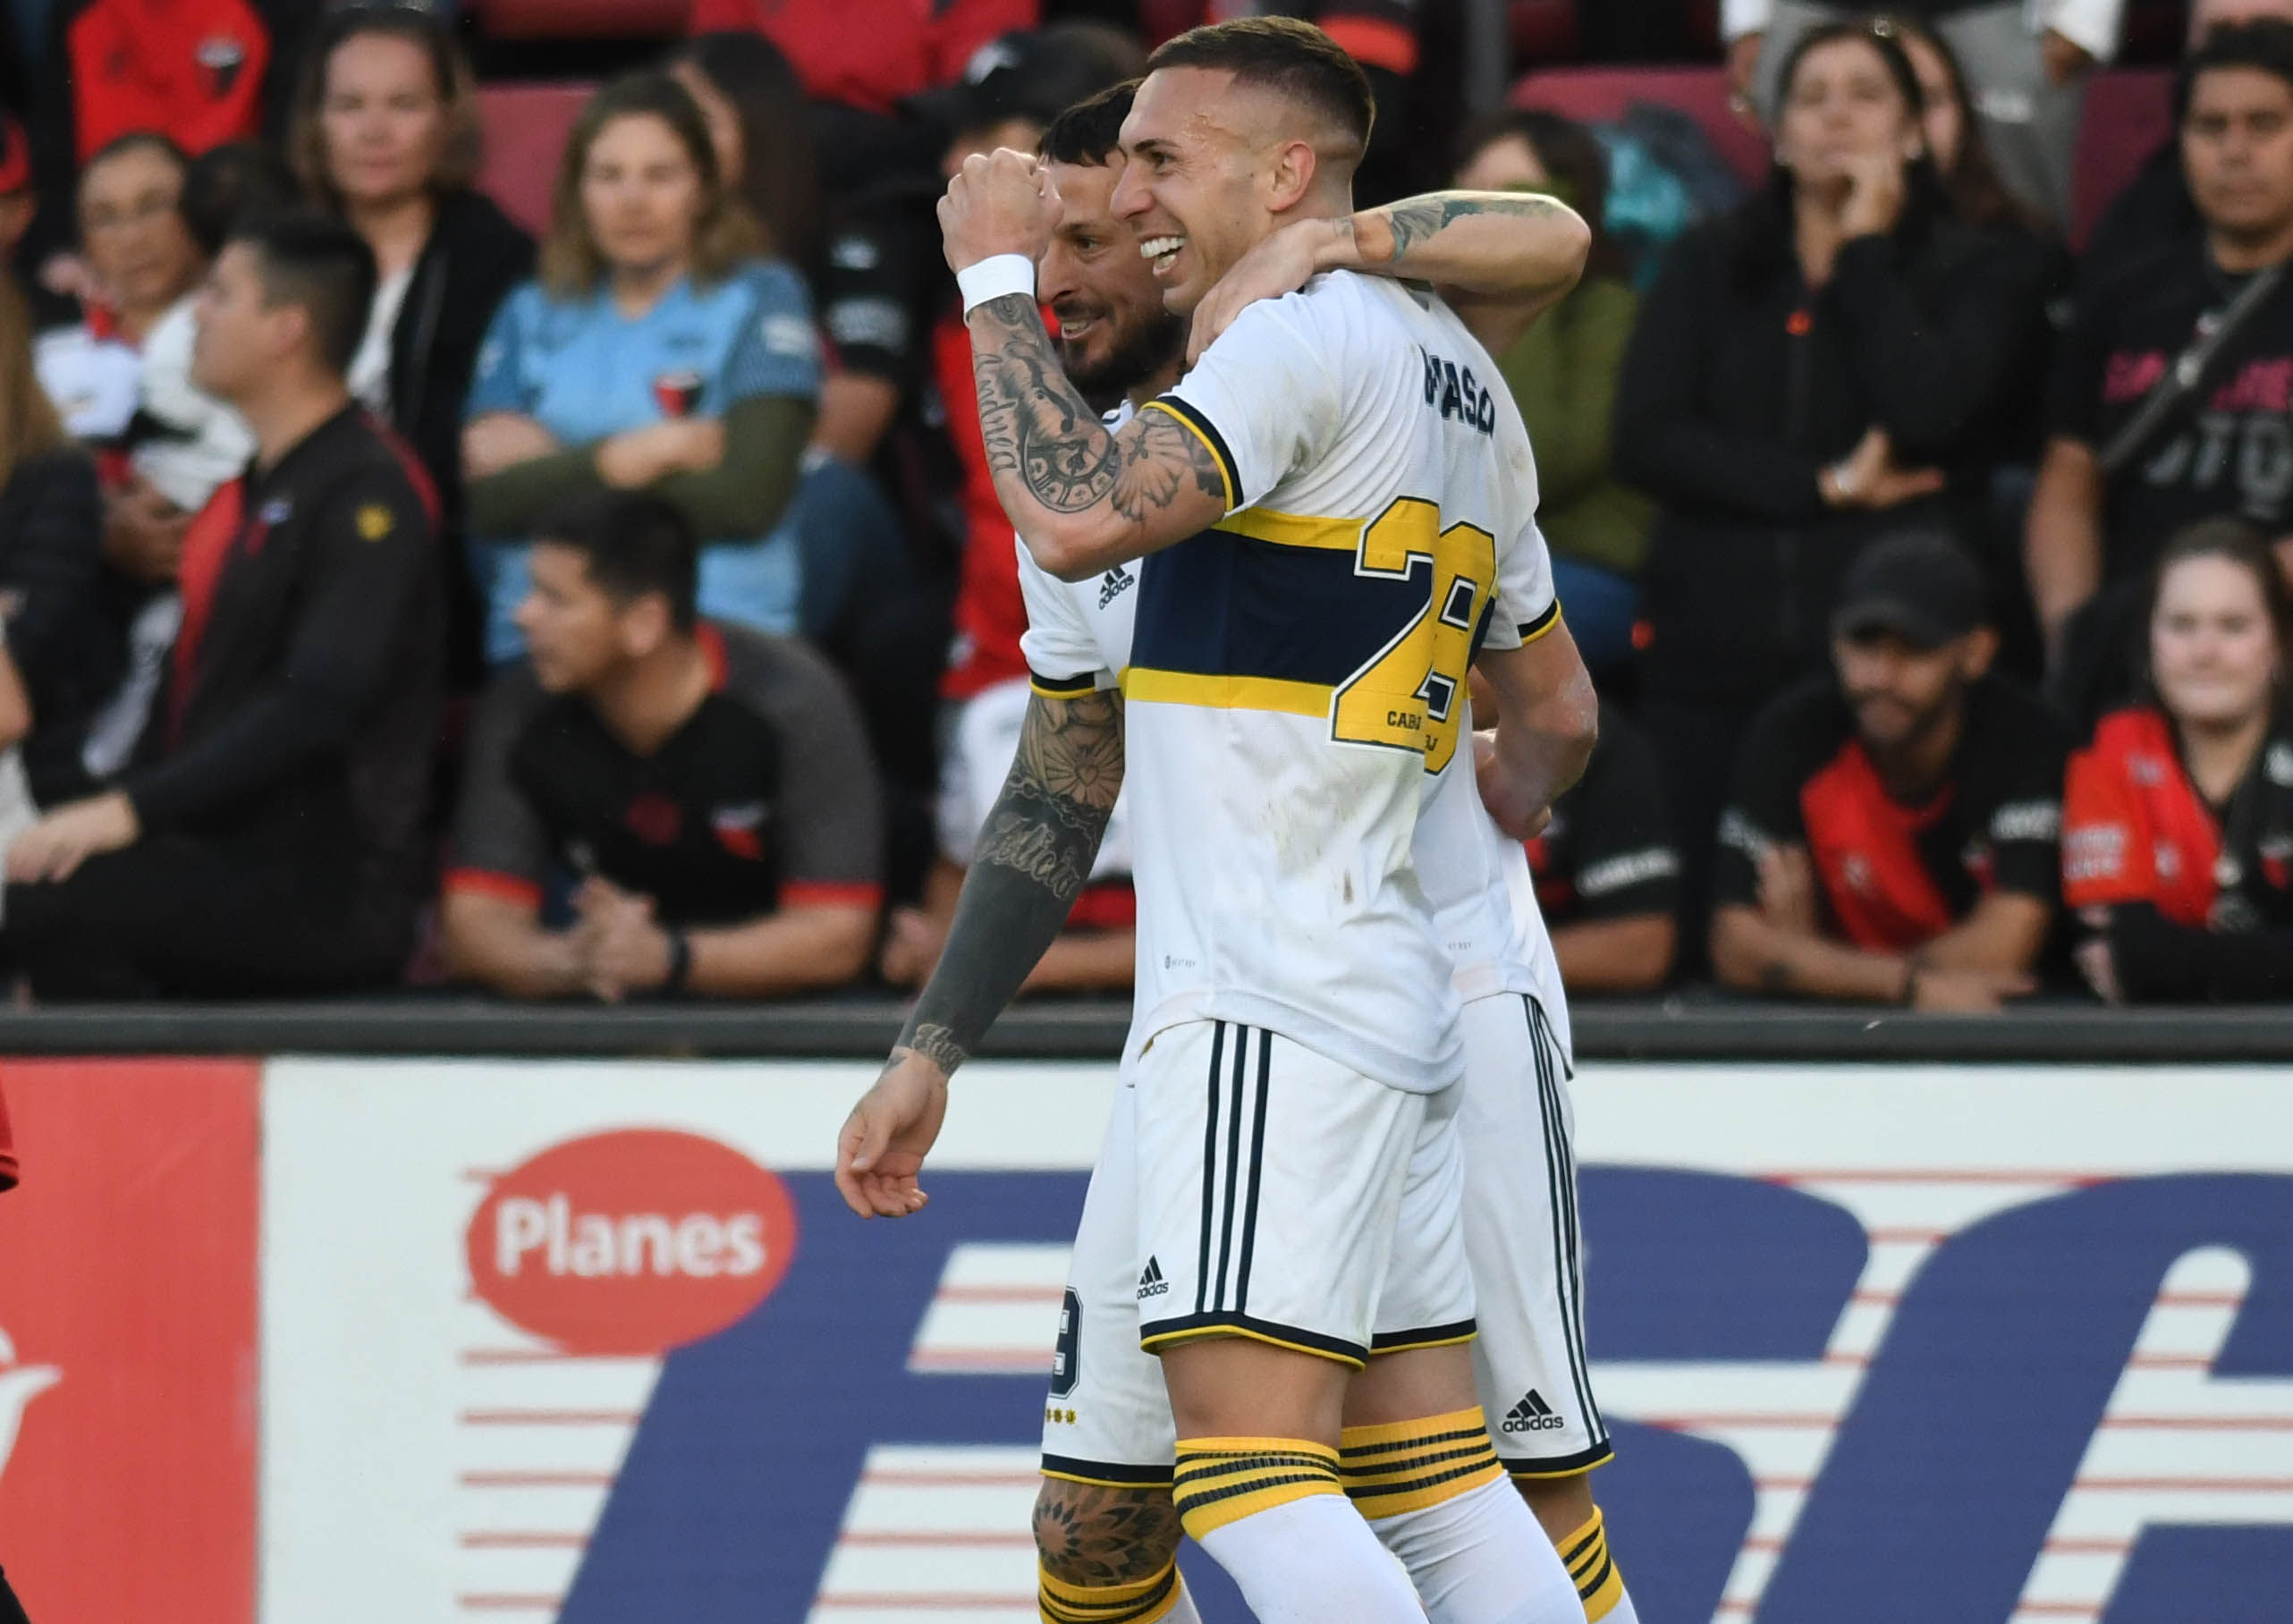 Briasco regresó con un gol ante Colón y volverá a concentrarse (@fotobairesarg)